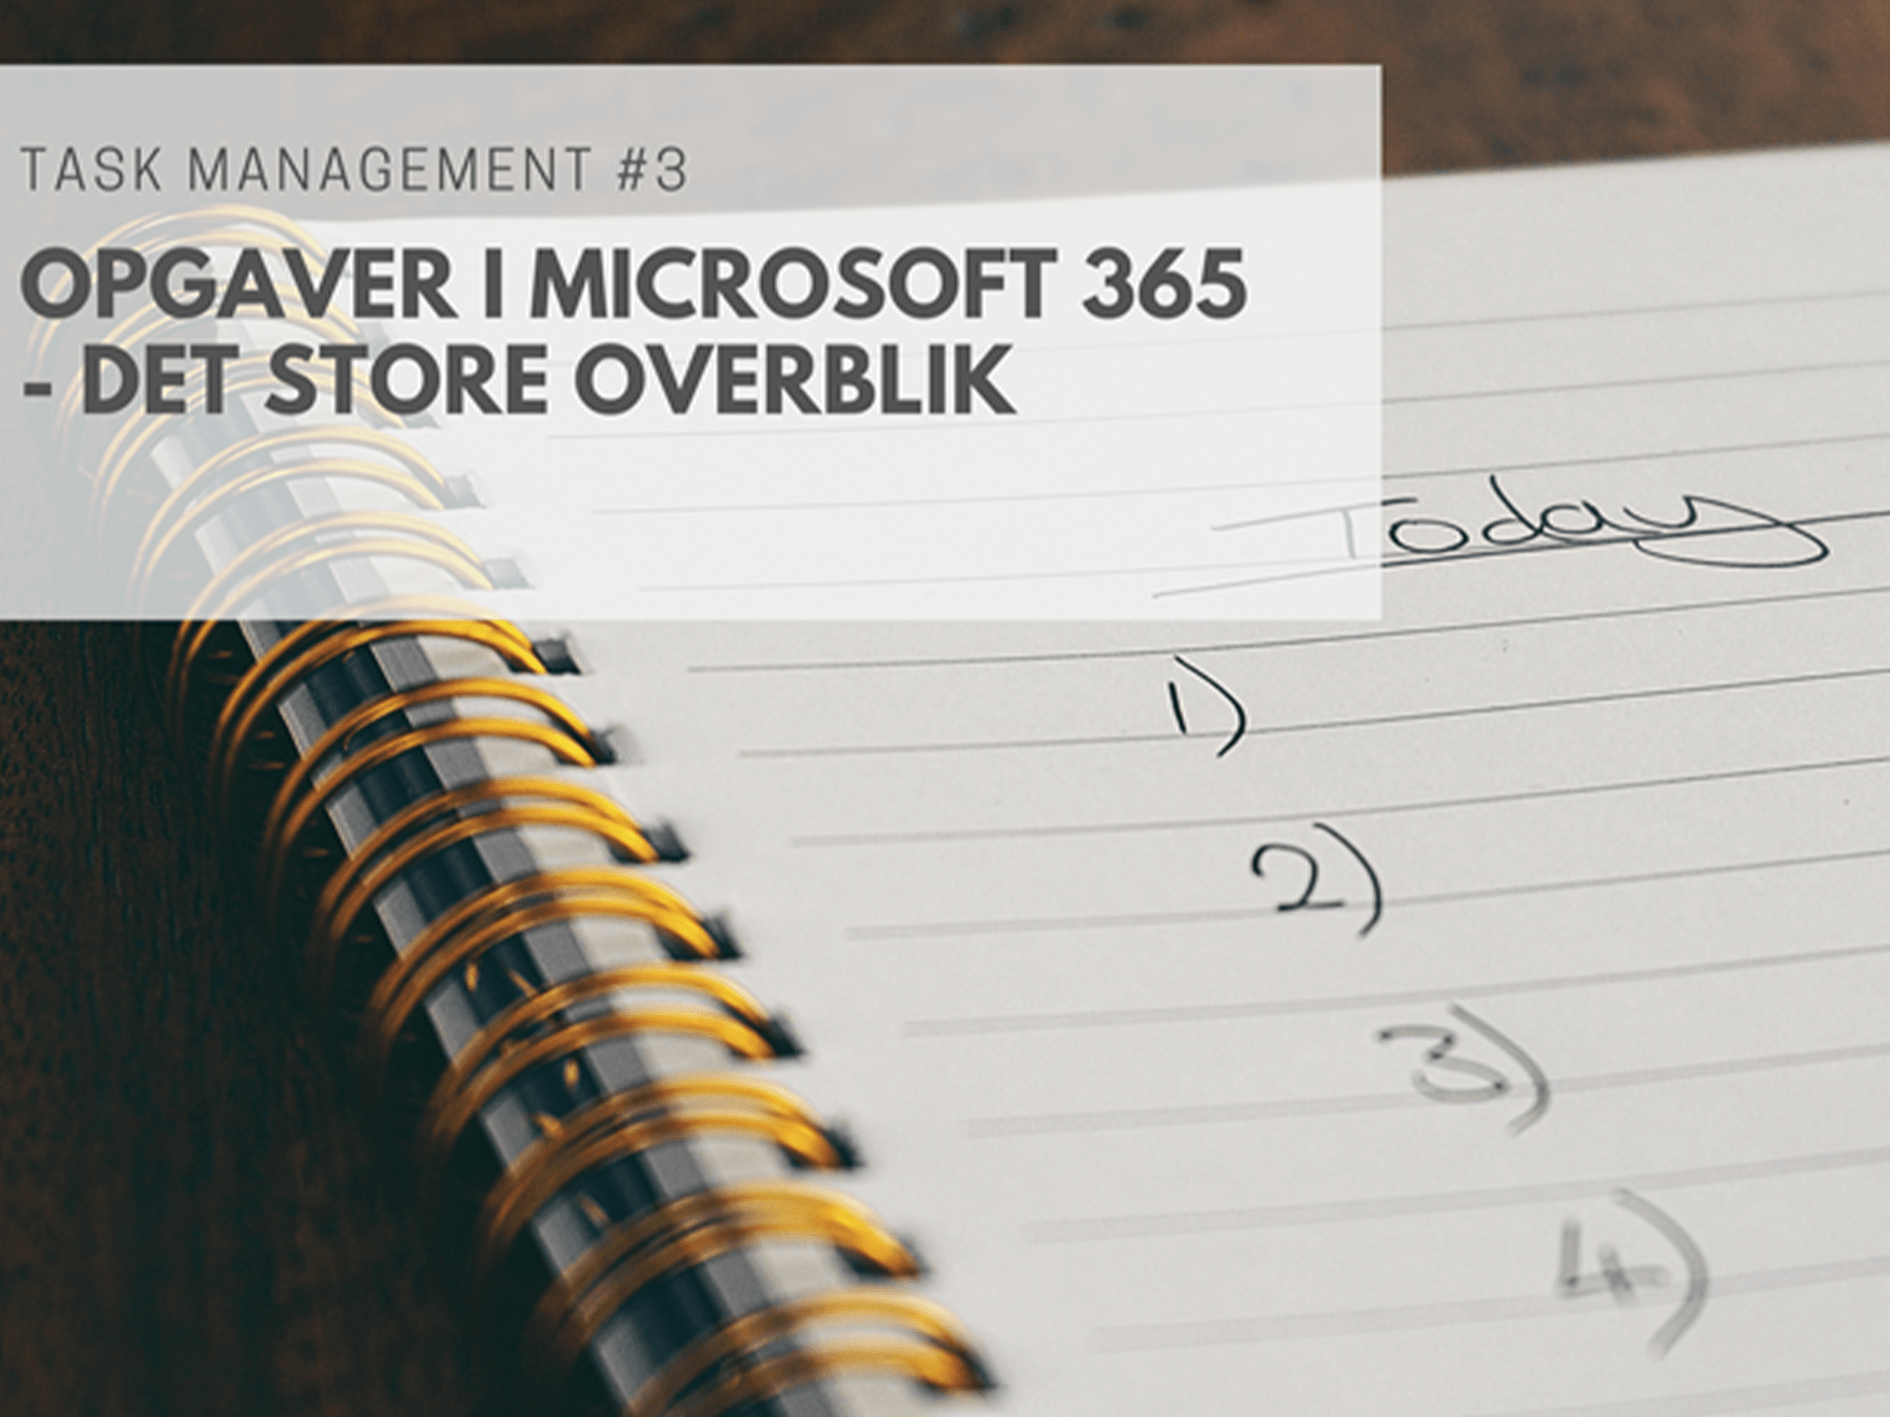 Task Management #3: Opgaver i Microsoft 365 - Det store overblik